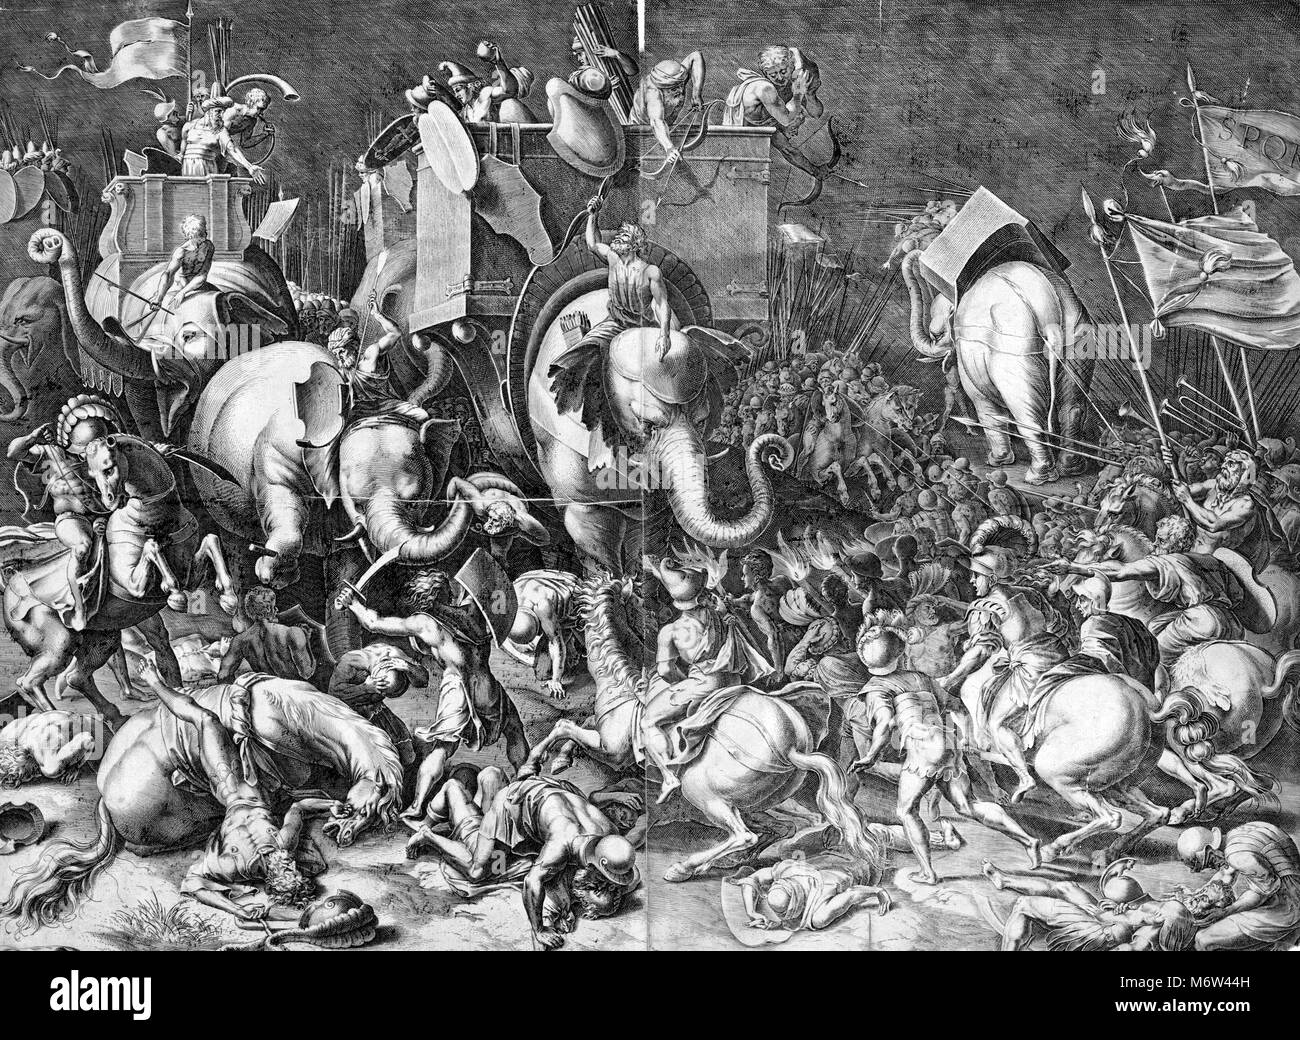 Kupferstich mit der Darstellung der Schlacht von Zama-in 202 v. Chr. in der Nähe von Zama (Tunesien) -, die das Ende des Zweiten Punischen Krieges markiert gekämpft. Gravur von einem Gemälde von Cornelis Cort (1533-1578). Das Bild zeigt Scipio Africanus zu Pferd mit römischen Soldaten Hannibal engagieren, Reitschule einen Krieg Elefanten, während der Schlacht von Zama. Stockfoto